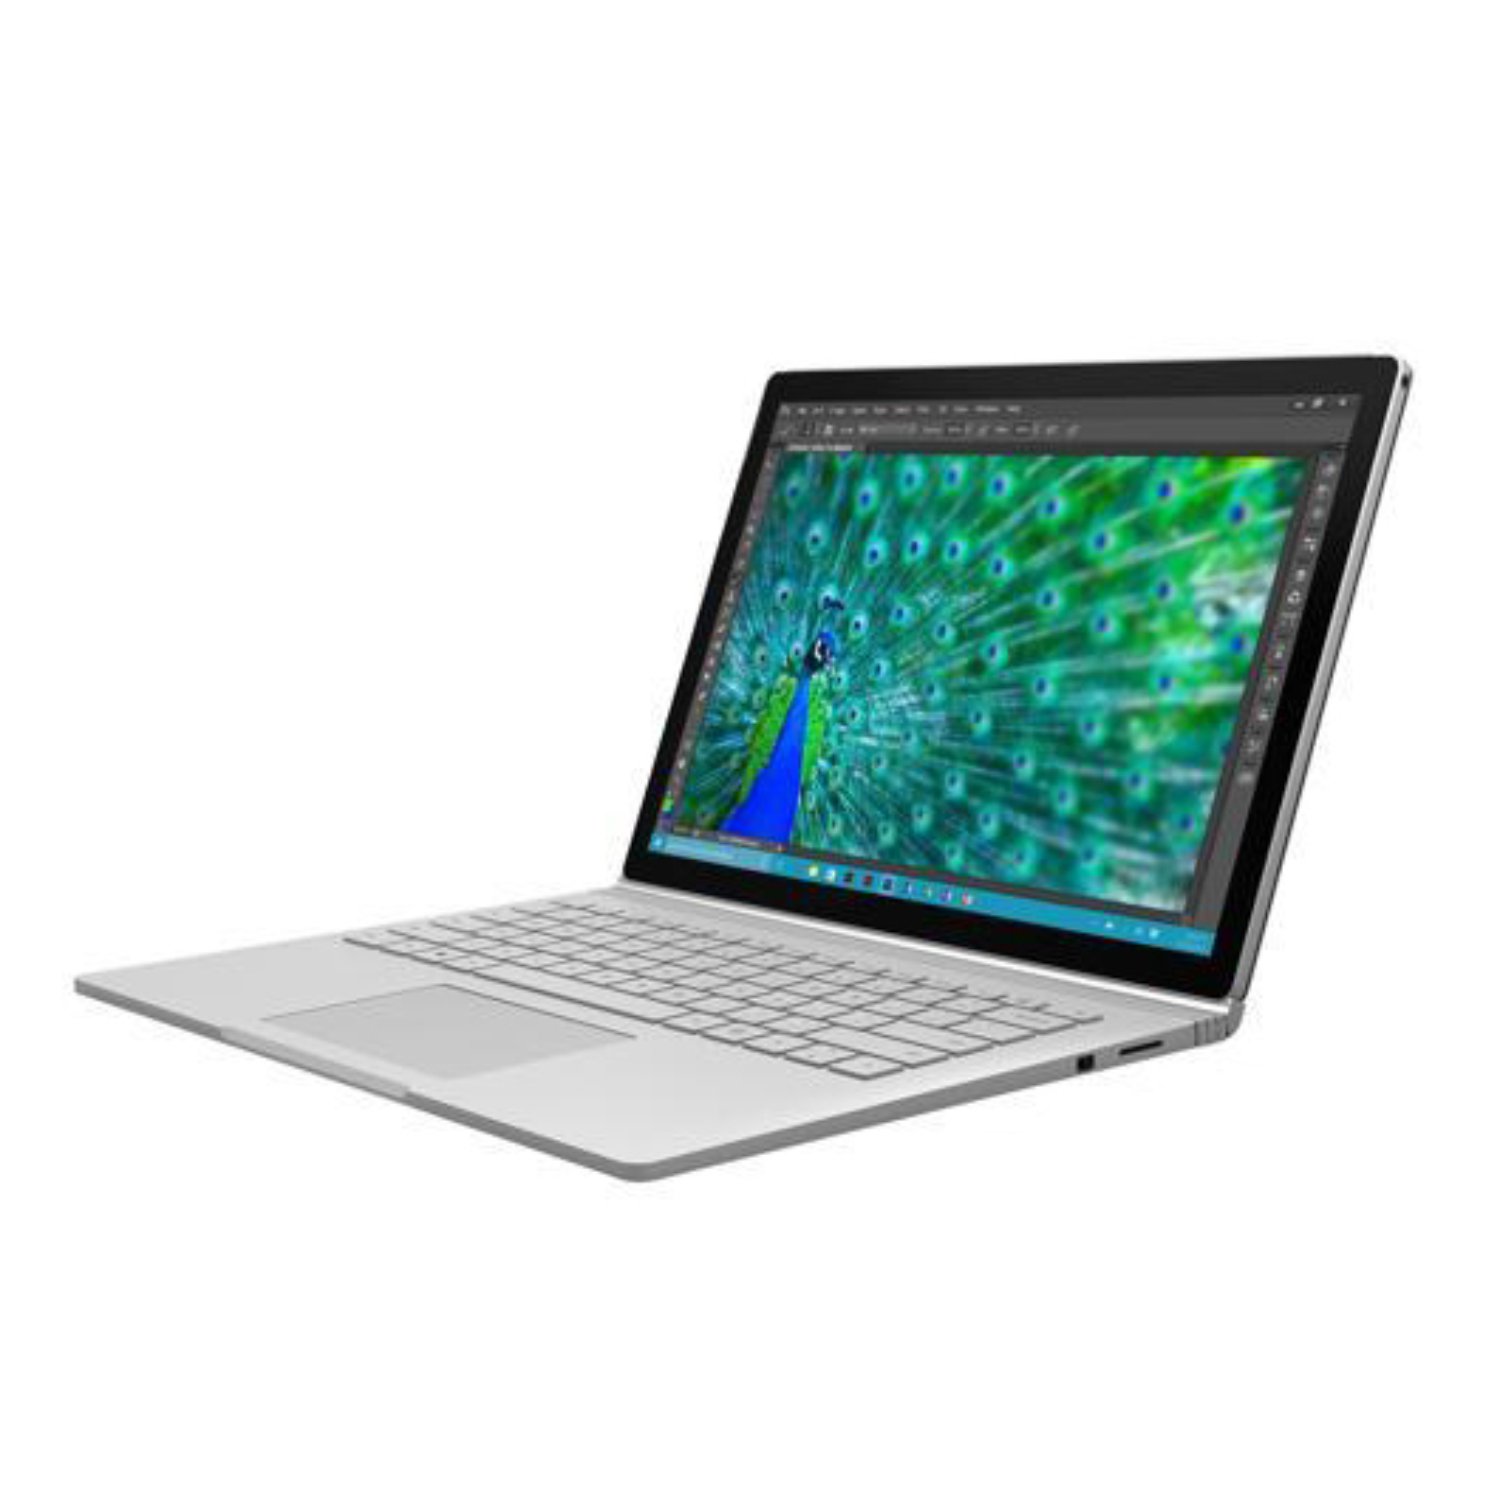 سرفیس لپ تاپ بوک 1 مایکروسافت 13 اینچ Core i7-16GB-512GB 